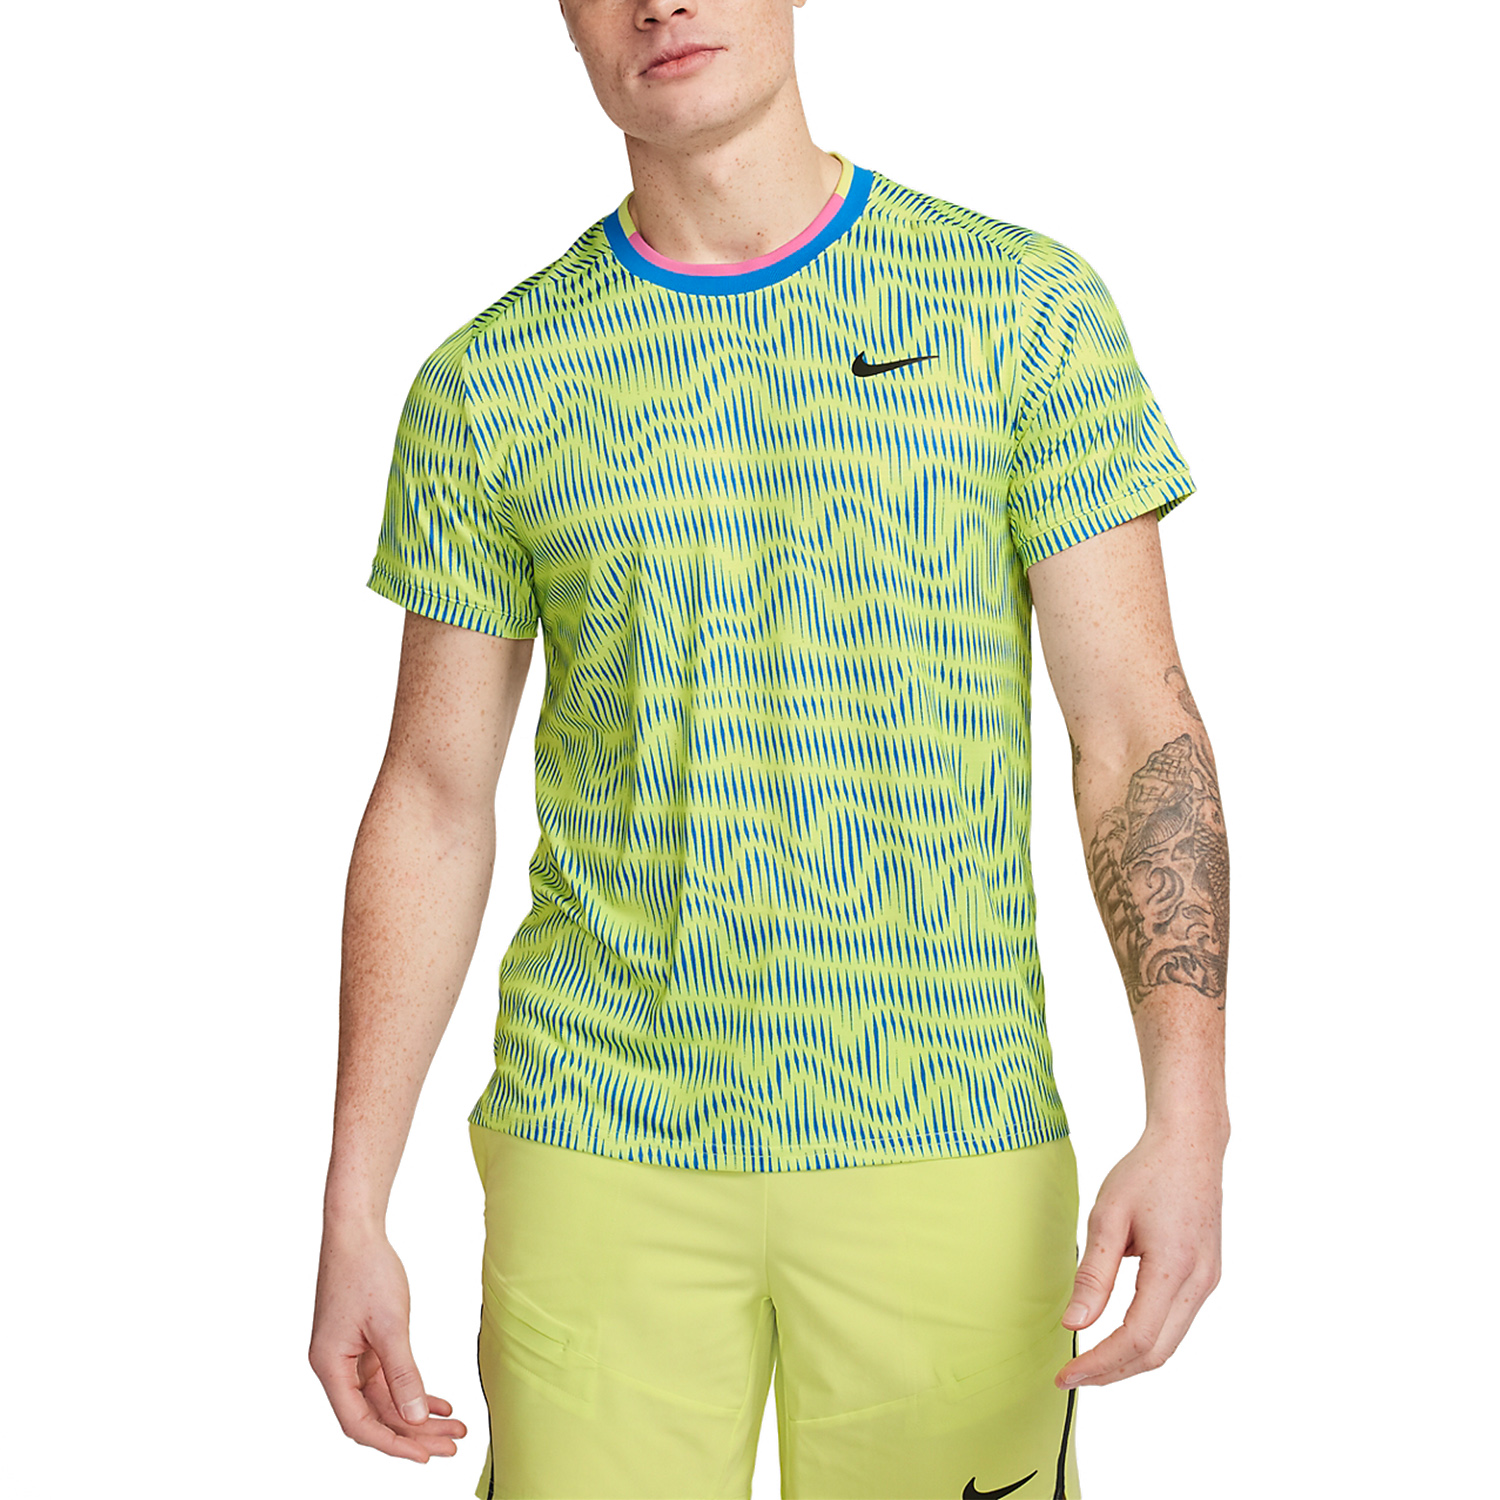 Nike Dri-FIT Advantage Camiseta - Light Lemon Twist/Light Photo Blue/Black